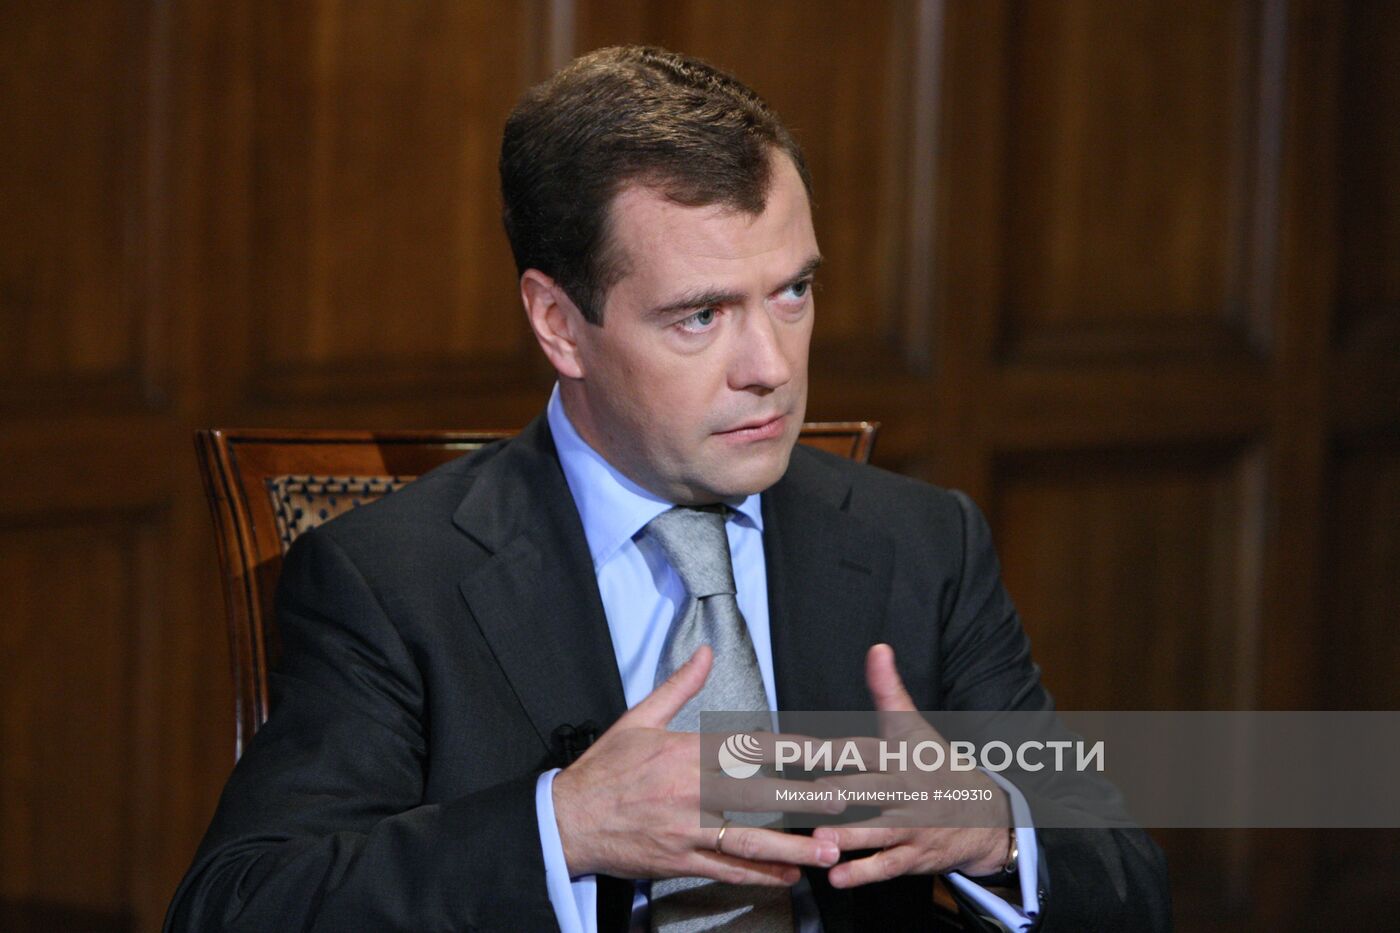 Д.Медведев дал интервью представителям итальянских СМИ